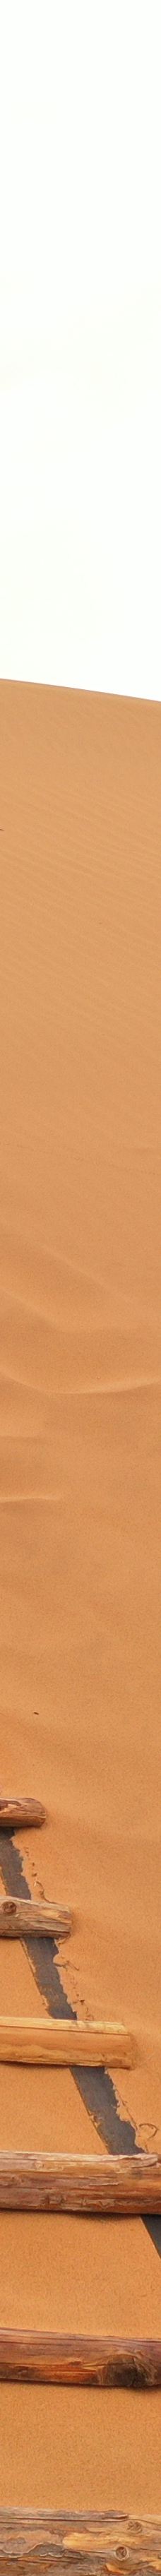 大漠征途露营地-阿拉善左旗